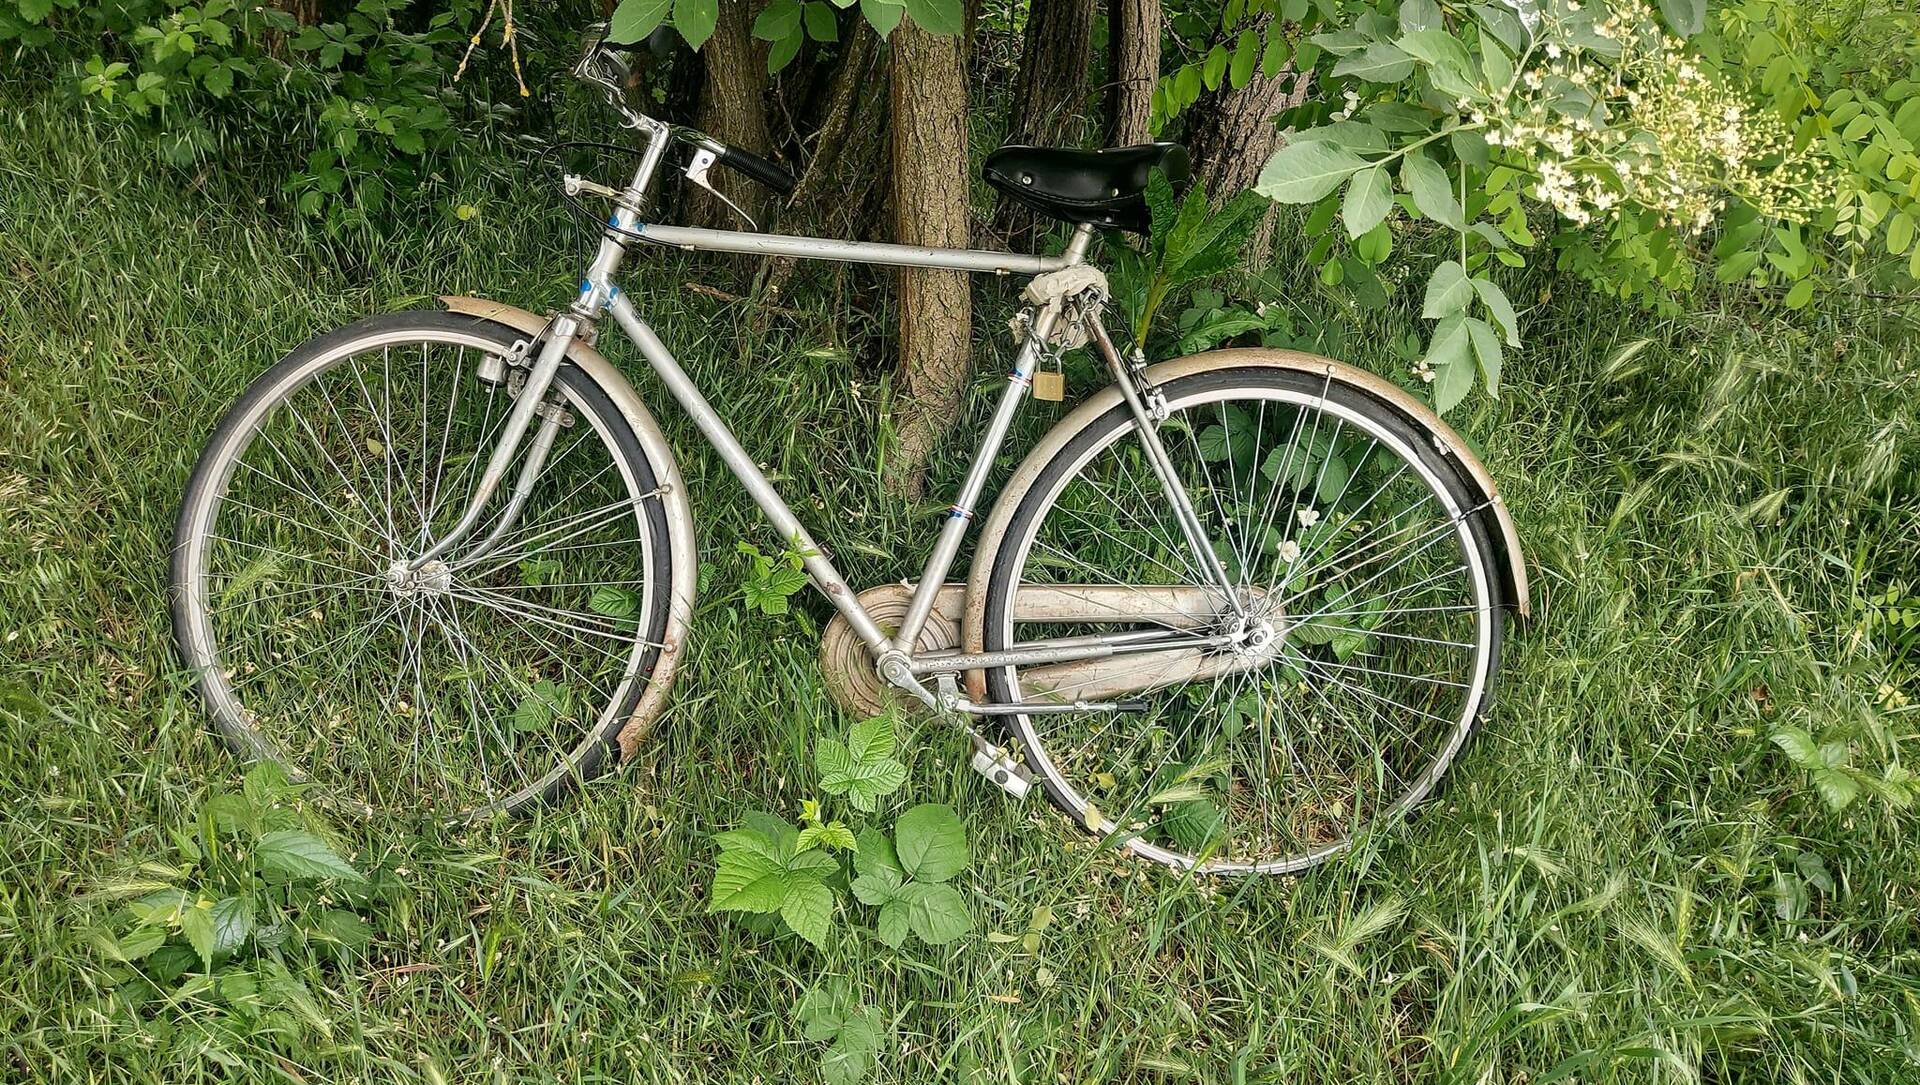 Caronno Pertusella: di chi è la bici abbandonata nel verde?